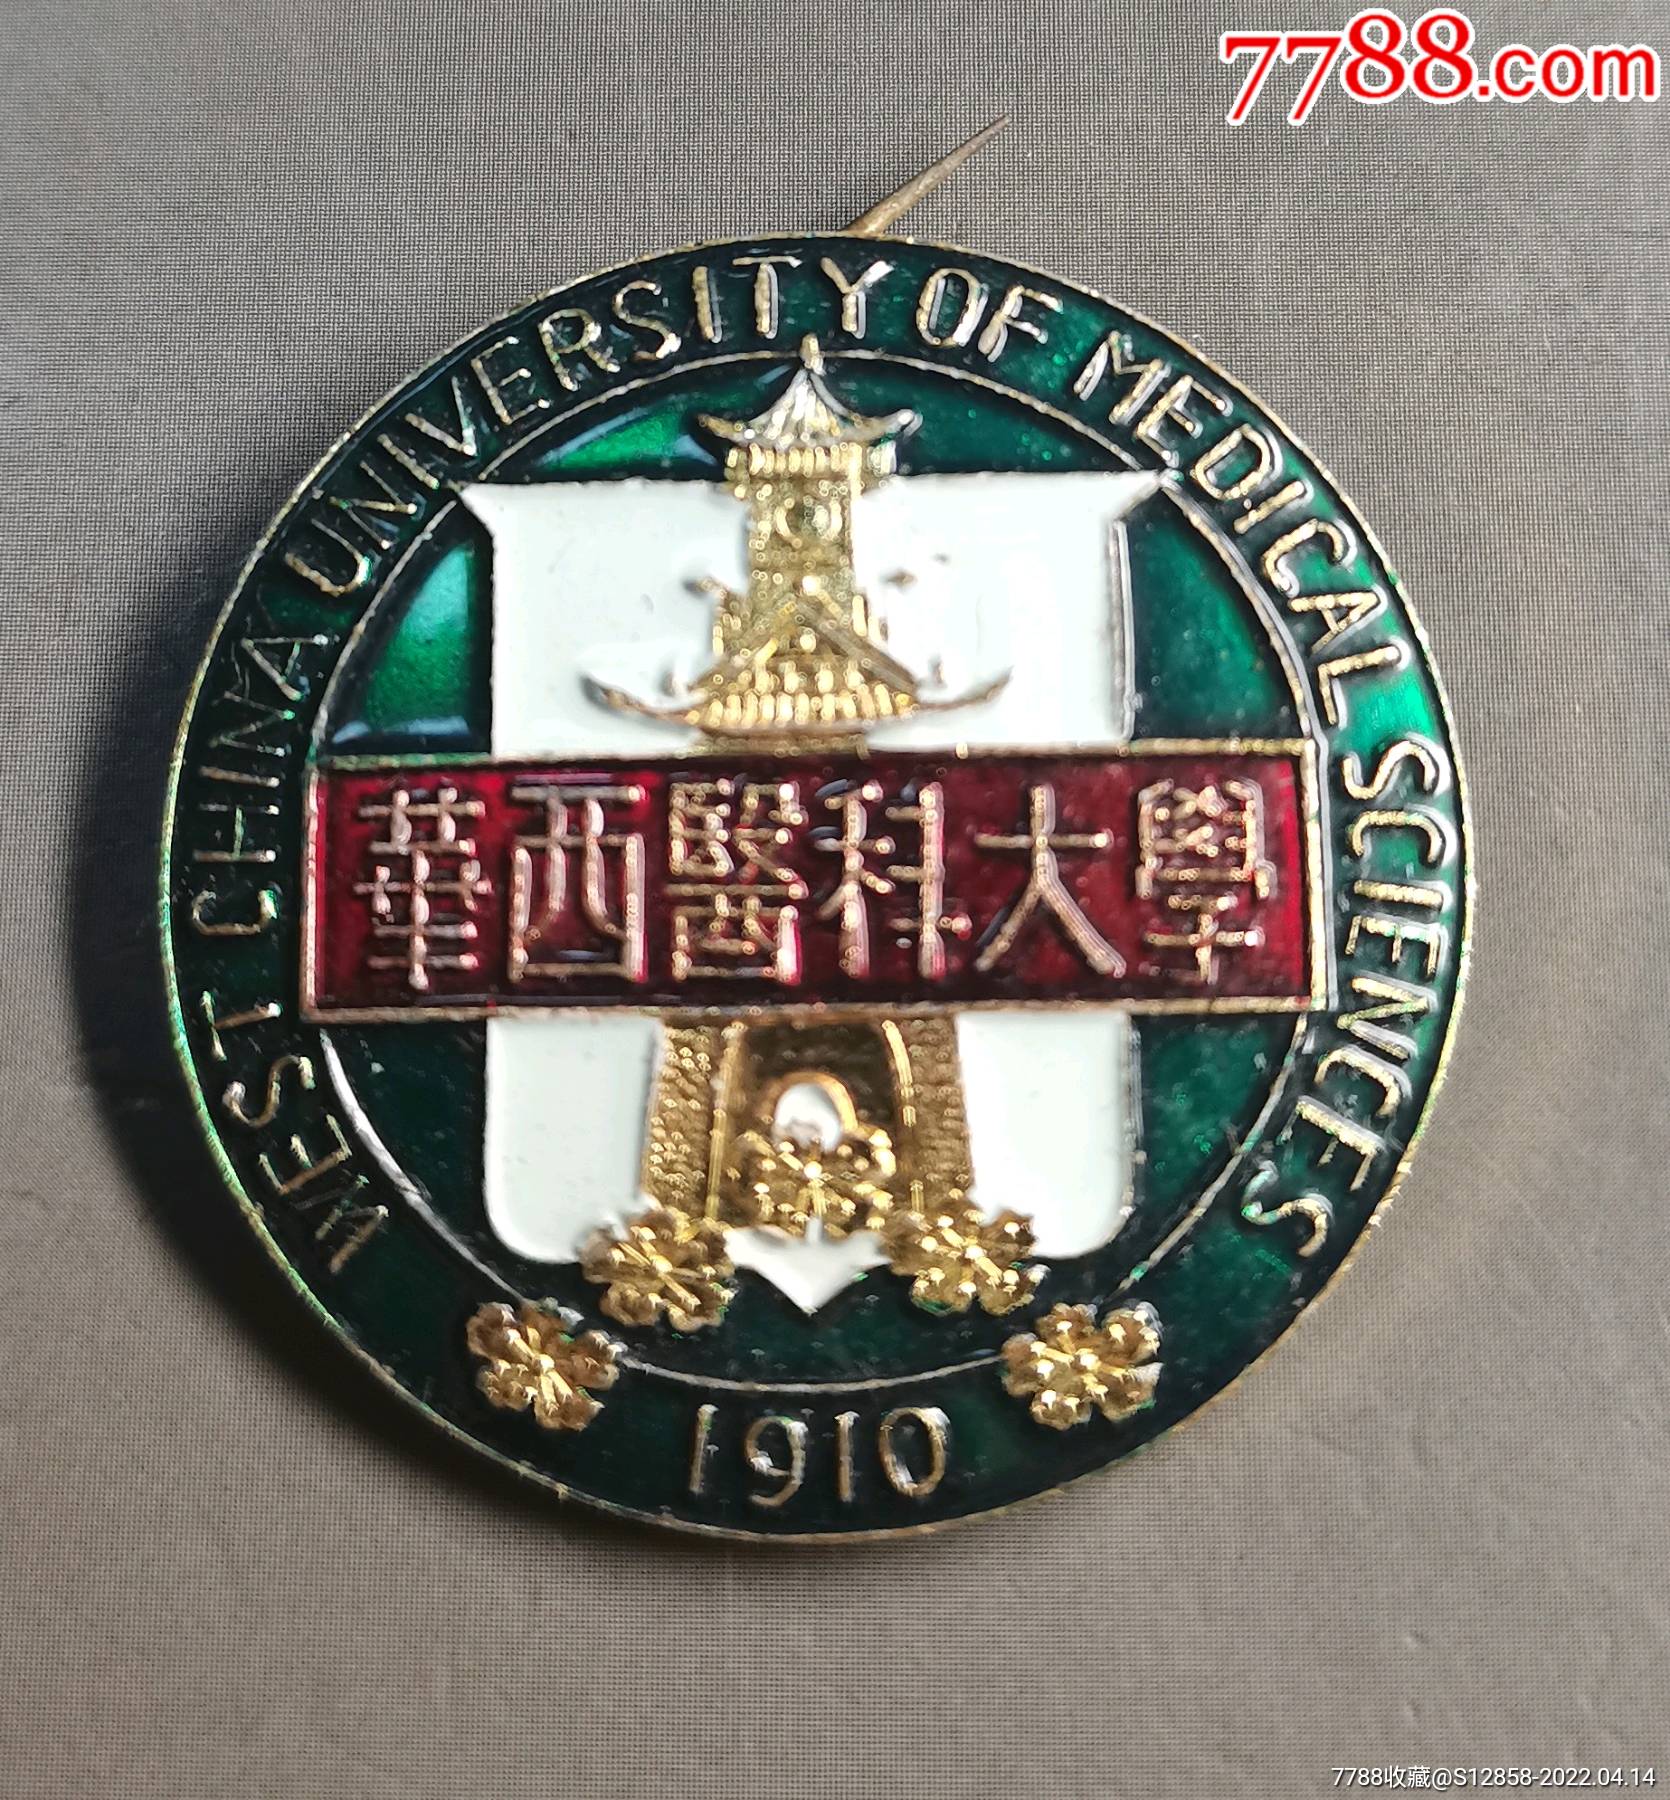 华西医科大学logo图片